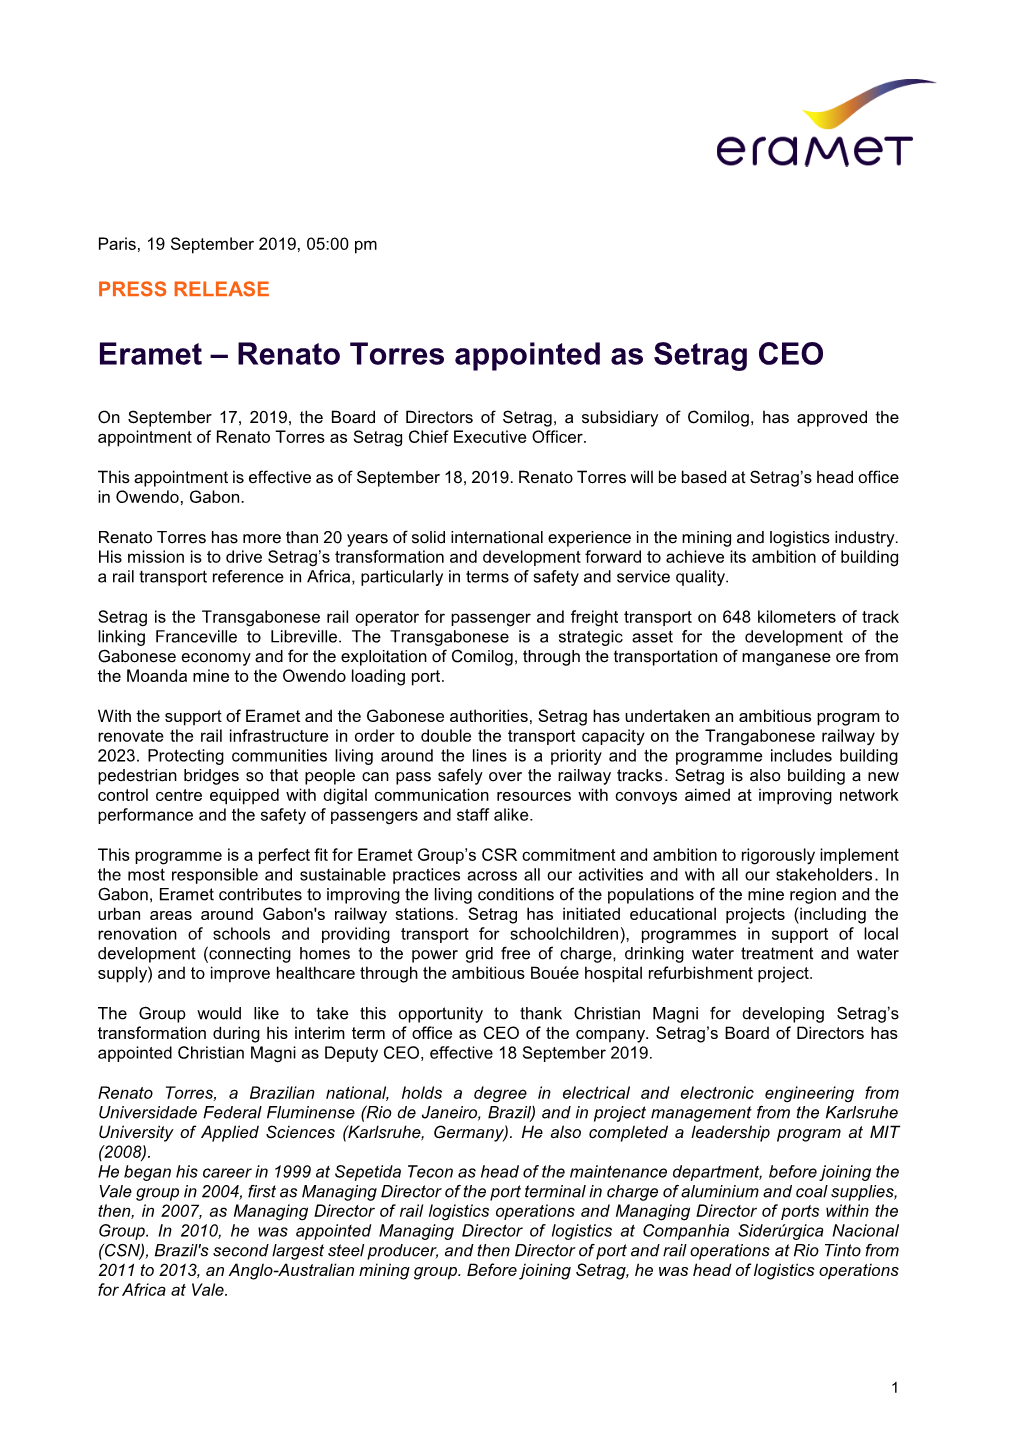 Renato Torres Appointed As Setrag CEO